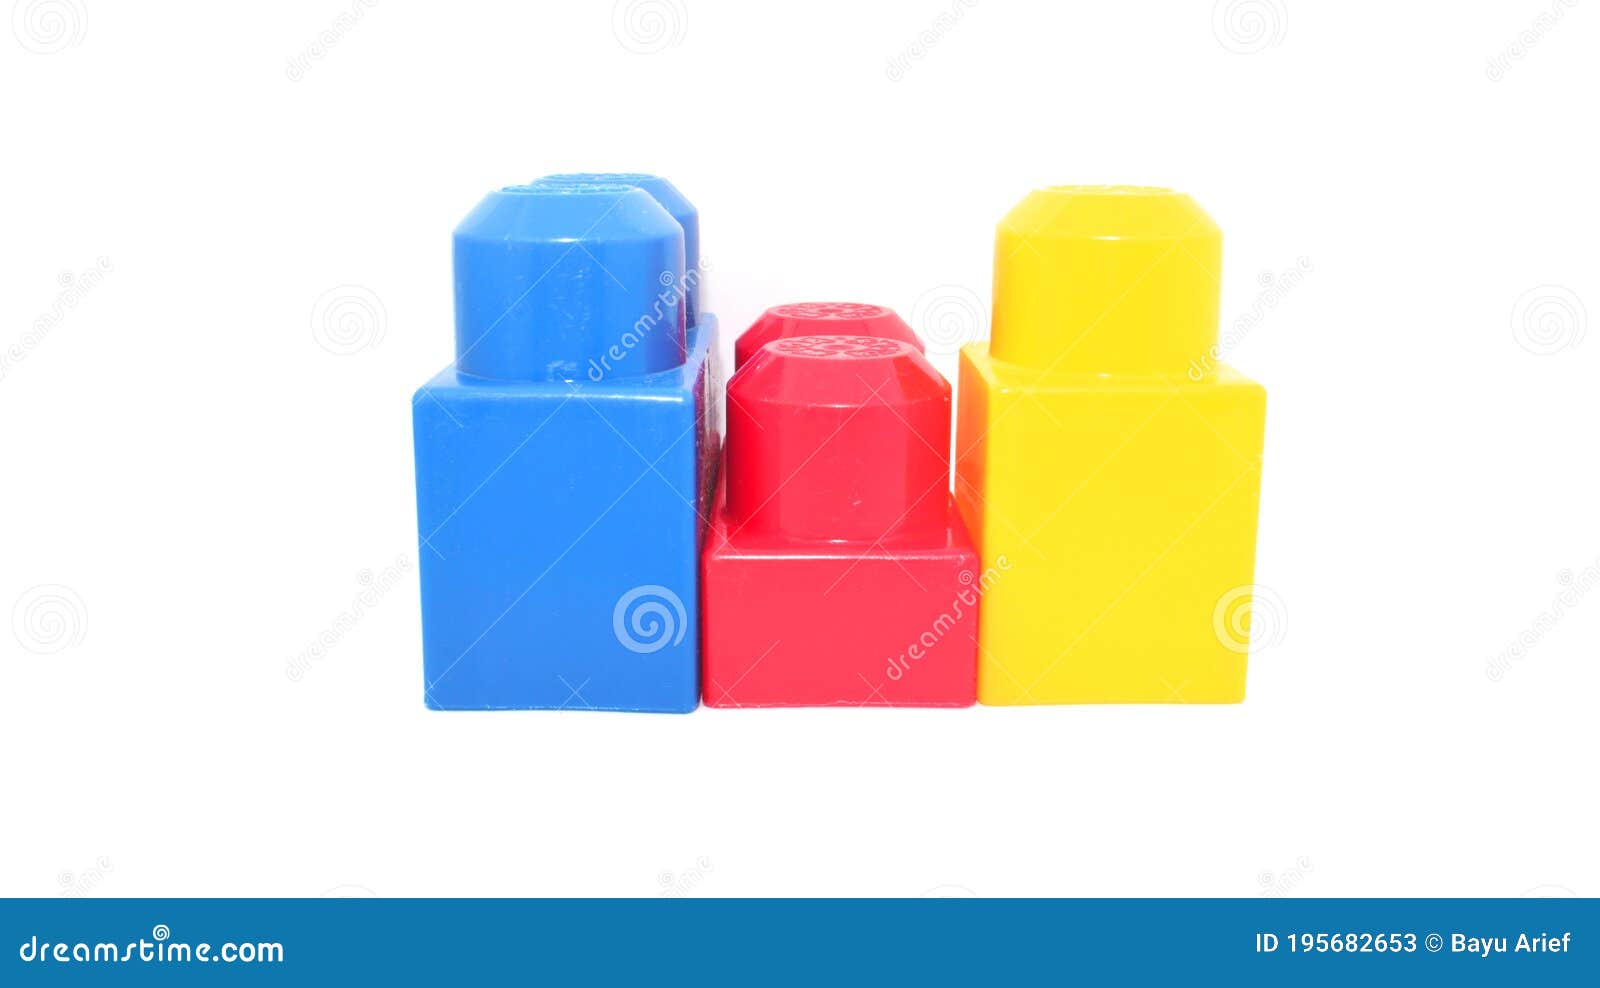 https://thumbs.dreamstime.com/z/une-ligne-de-gros-lego-rouge-jaune-et-bleu-avec-couleur-m%C3%A9ga-bloc-prise-en-studio-fond-blanc-cam%C3%A9ra-canon-195682653.jpg